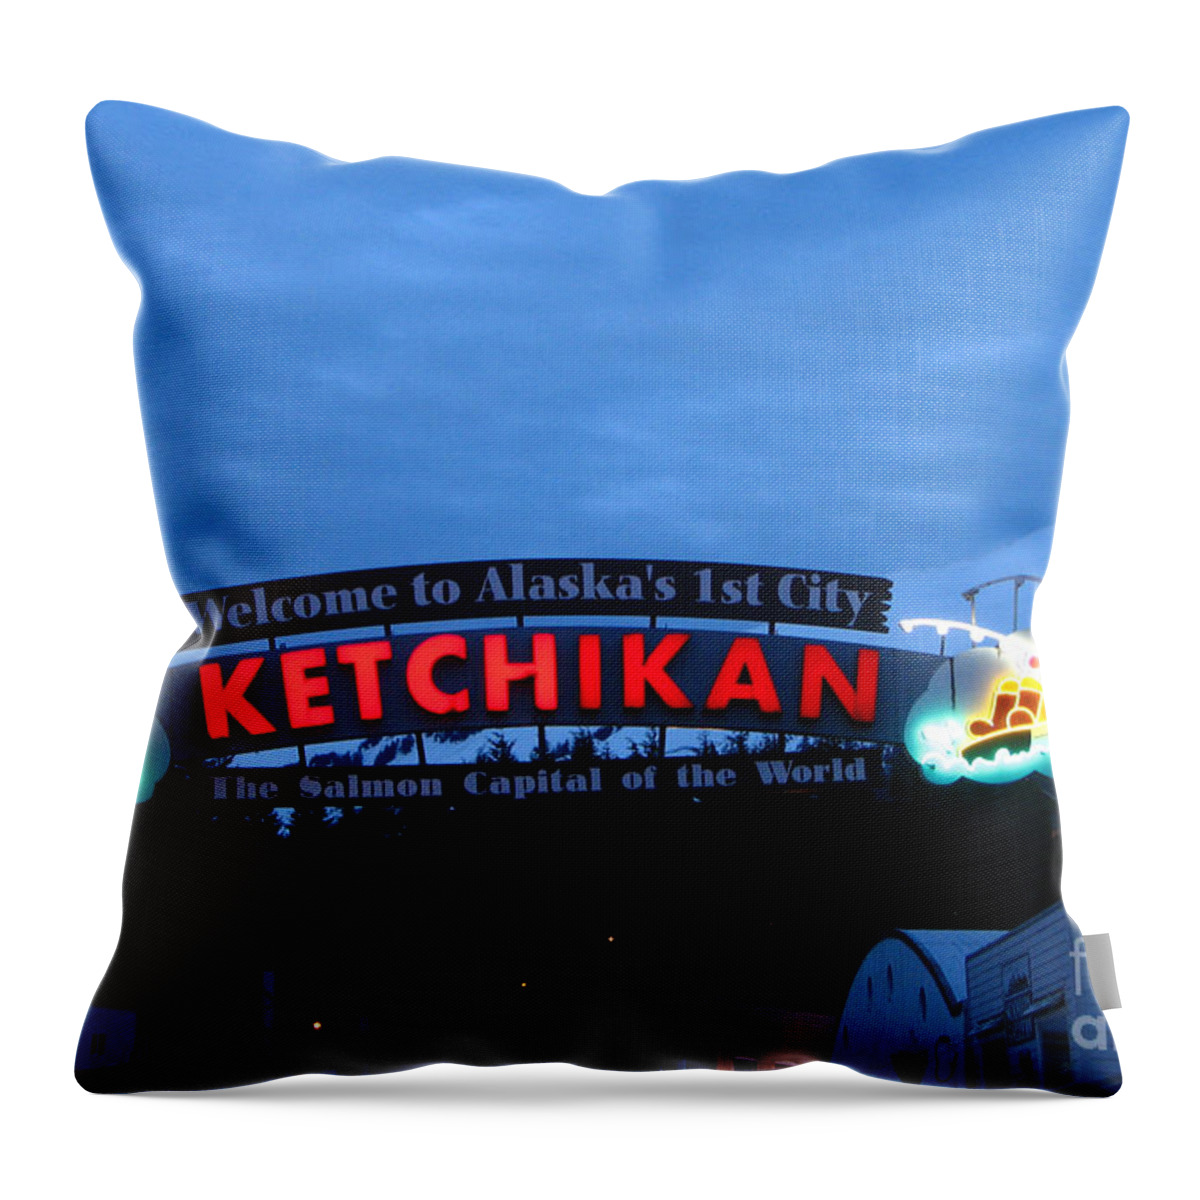 Alaska Throw Pillow featuring the photograph Ketchikan by Robert Bales